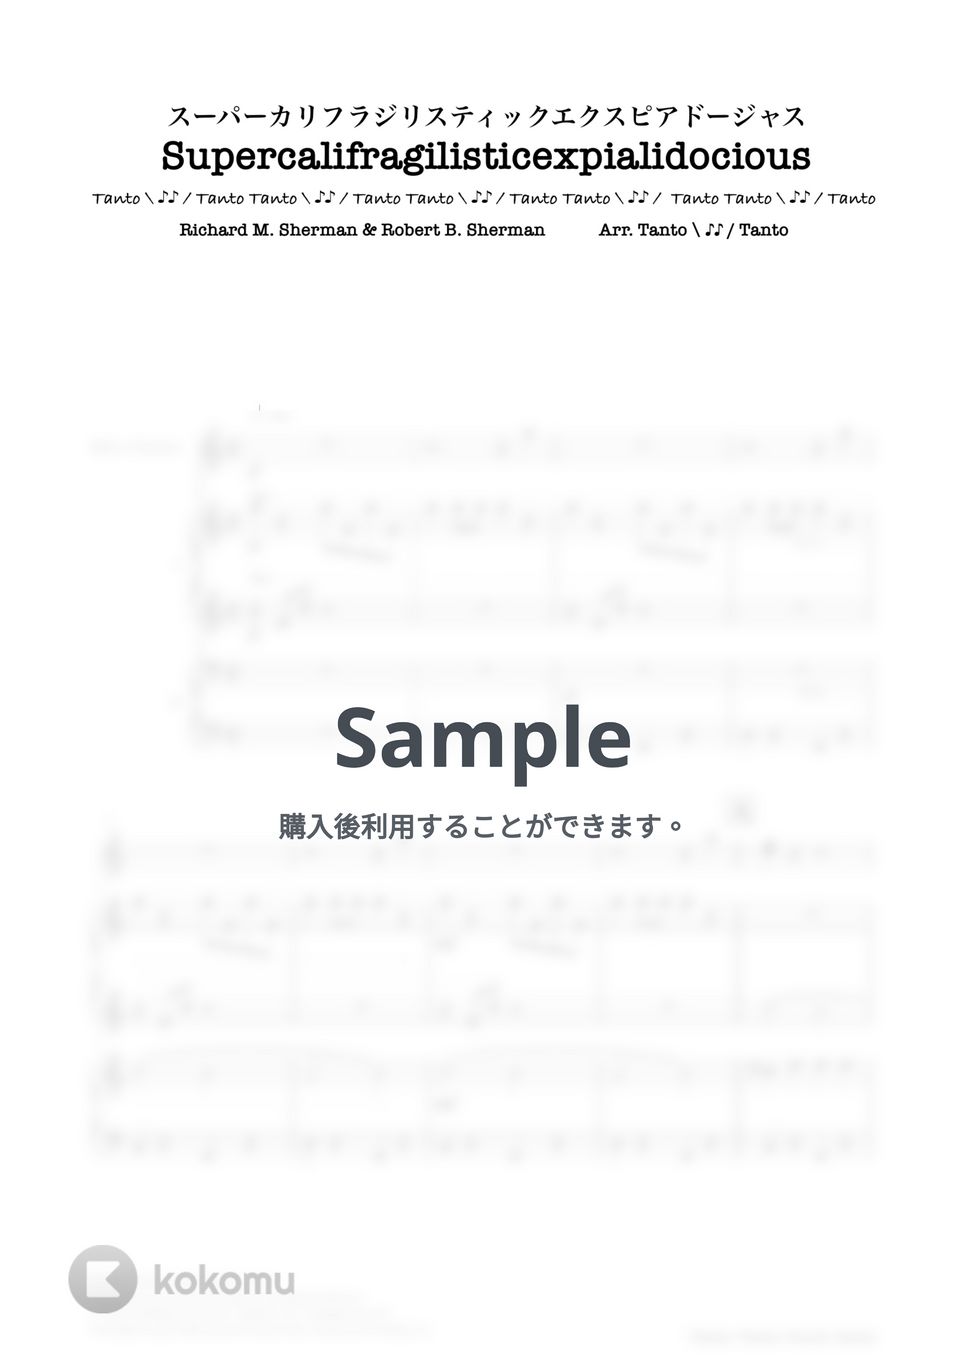 ロバート バーナード シャーマン　リチャード モートン シャーマン - SUPERCALIFRAGILISTICEXPIALIDOCIOUS (4手連弾➕ハンドベル or グロッケン Piano Duets in C) by Tanto Tanto